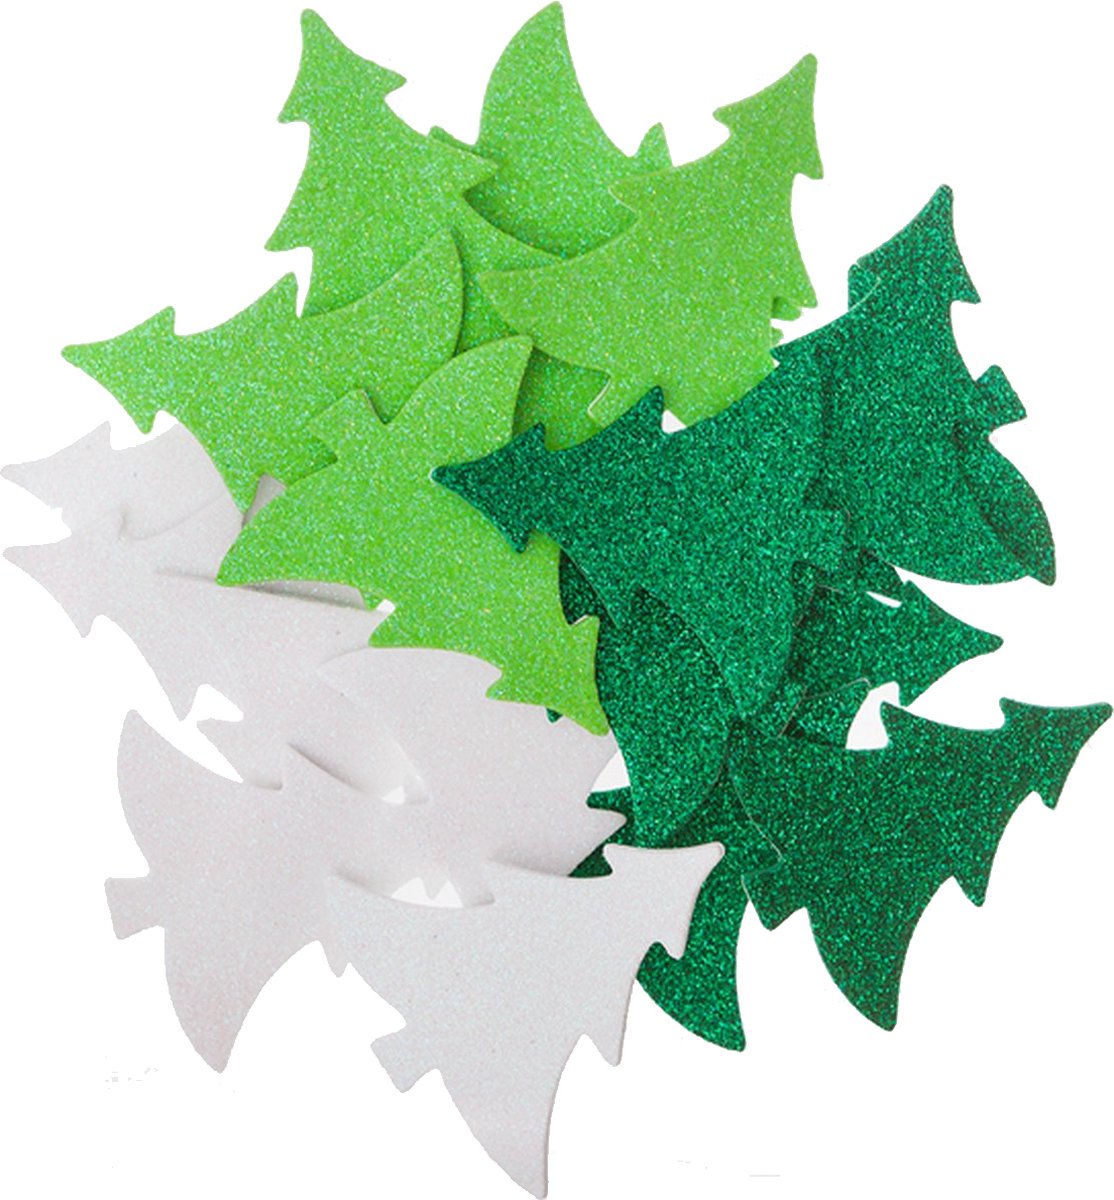 Foam Kerstboom Stickers met Glitters - Kaarten Maken - Grote Foam Stickers Kerst - Glitterstickers Kerst - Kerstmis - Knutselen Meisjes - Knutselen Volwassenen - Kerstkaarten Maken - Hobbystickers - Kerst Decoratie - Stickers Kerstmis